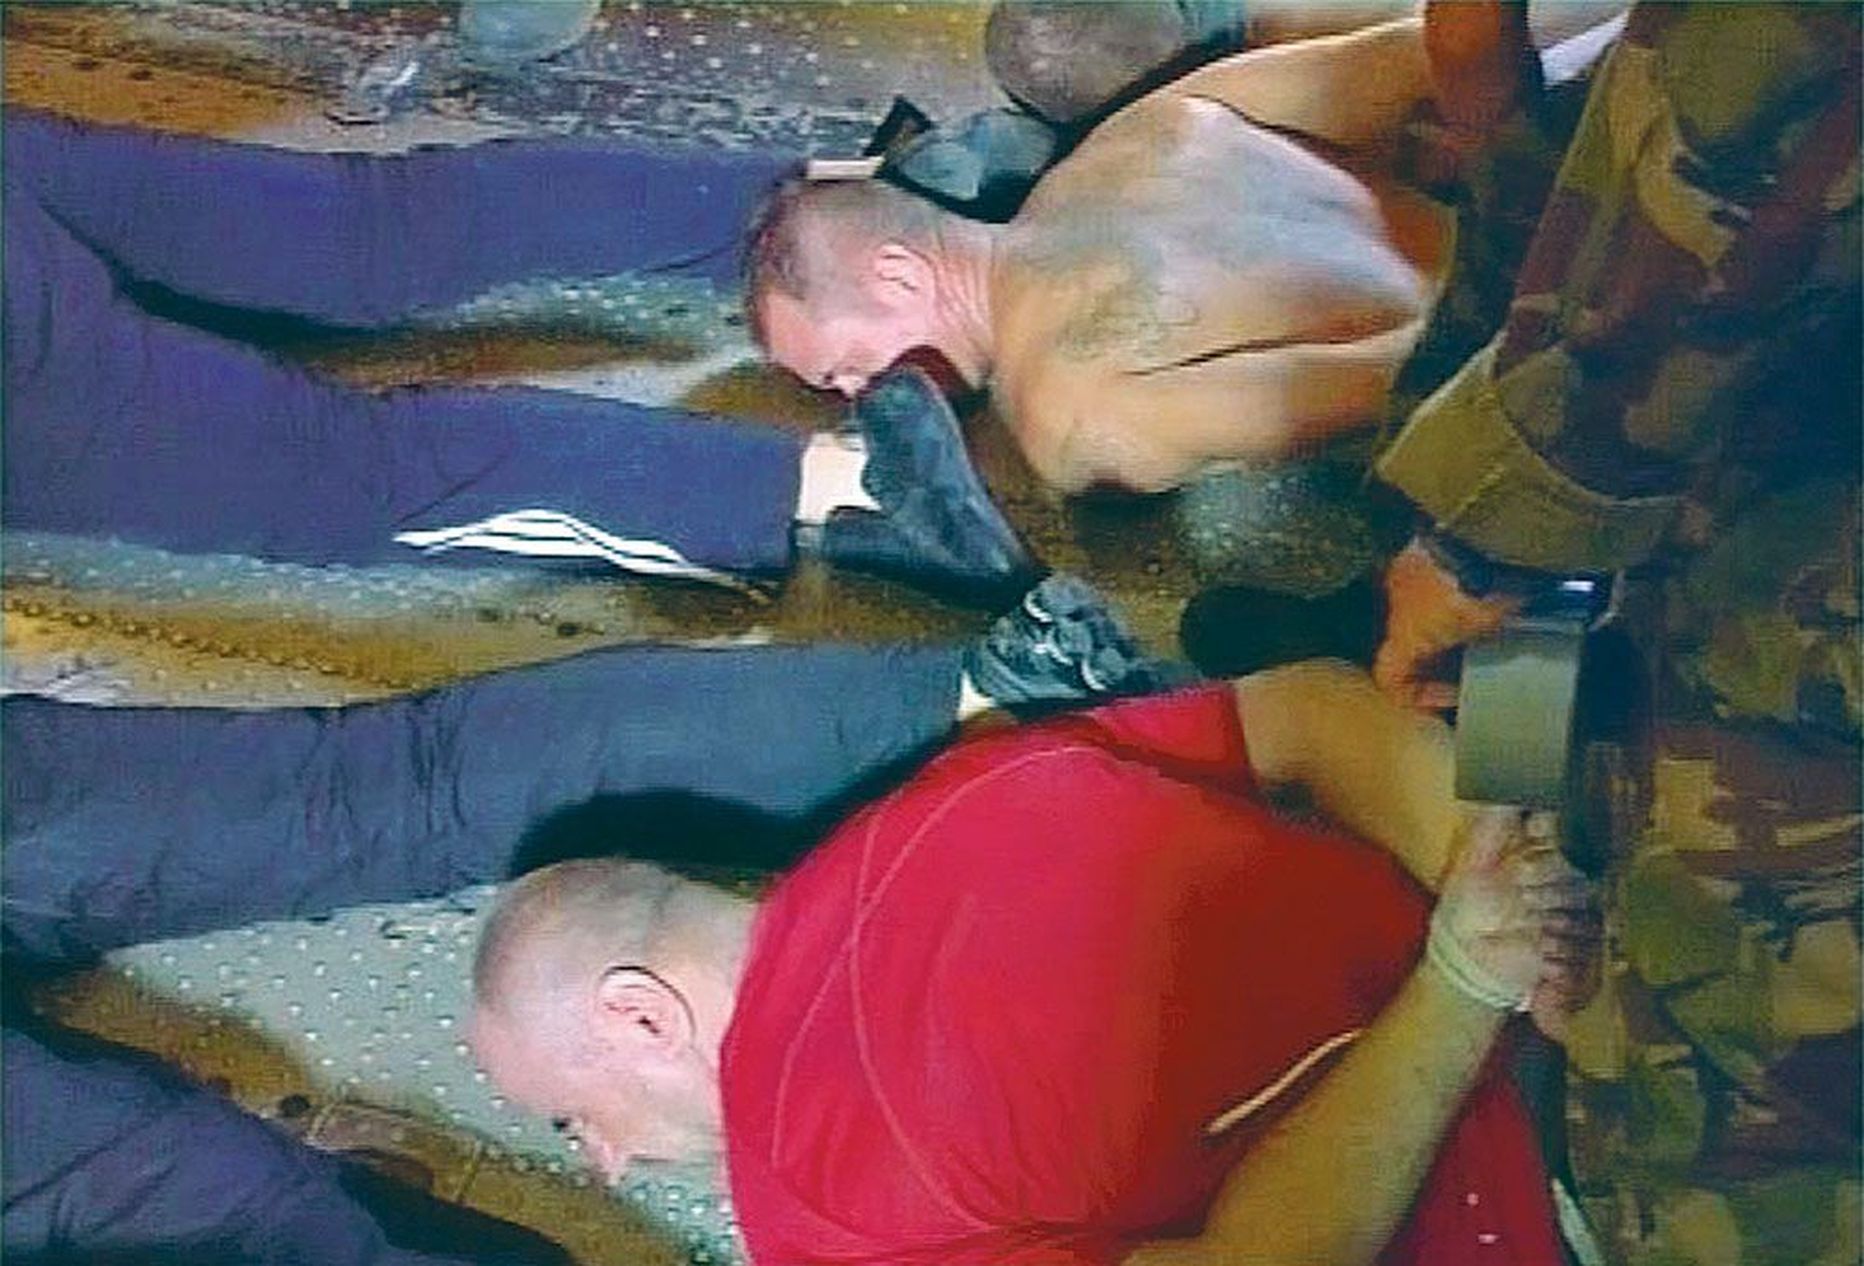 Venemaa televisoonis 21. augustil 2009 näidatud kaader kaubalaeva Artic Sea kaaperdajatest. Vene sõjaväelased võtsid mehed kinni neli päeva varem.